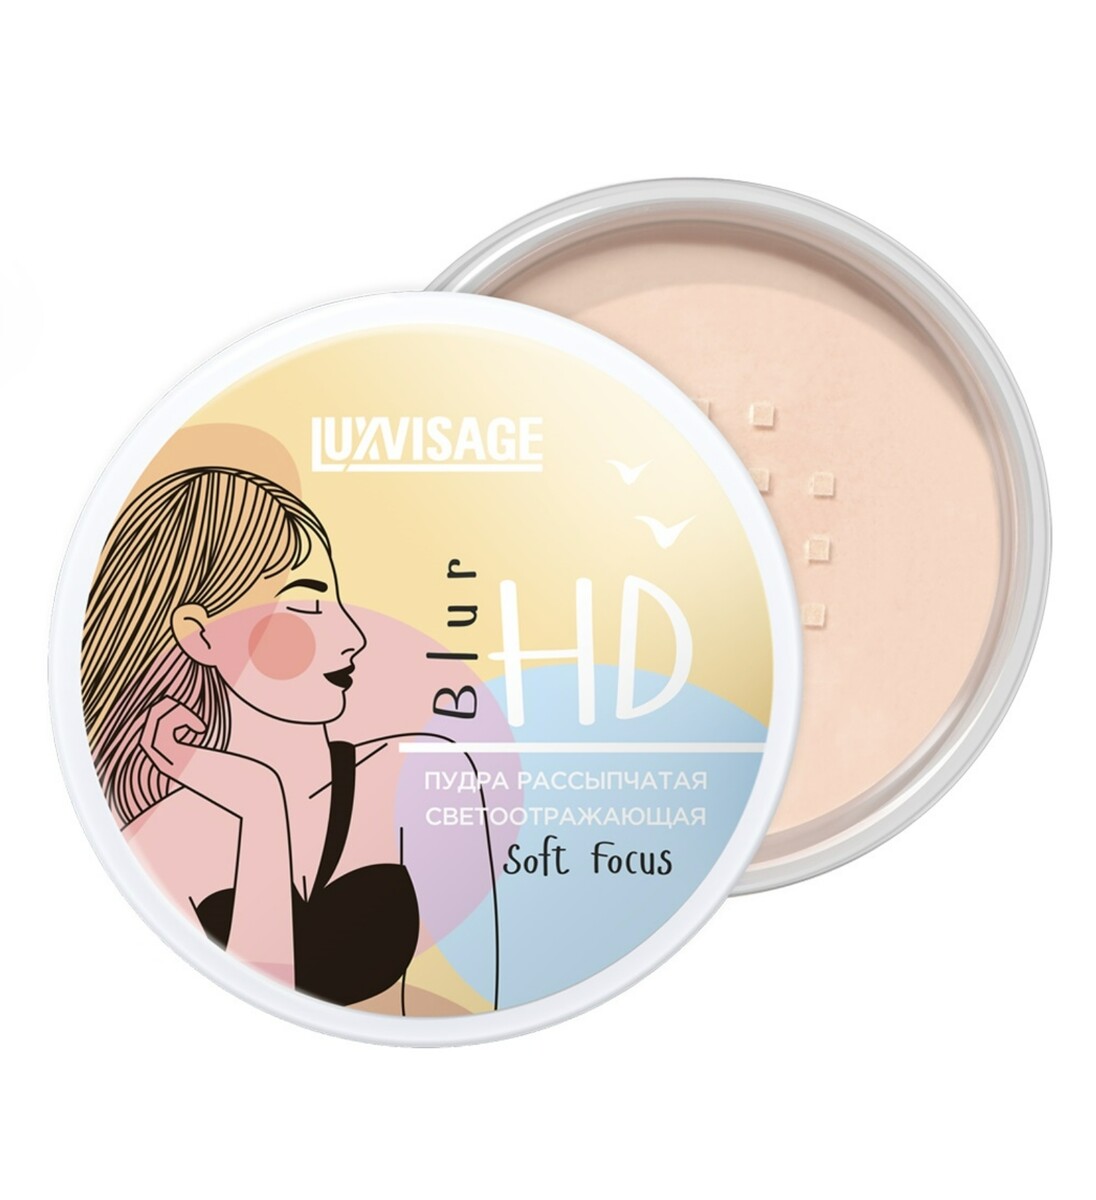 Luxvisage пудра рассыпчатая светоотражающая luxvisage hd blur soft focus, универсальный основа под макияж luxvisage pore killer